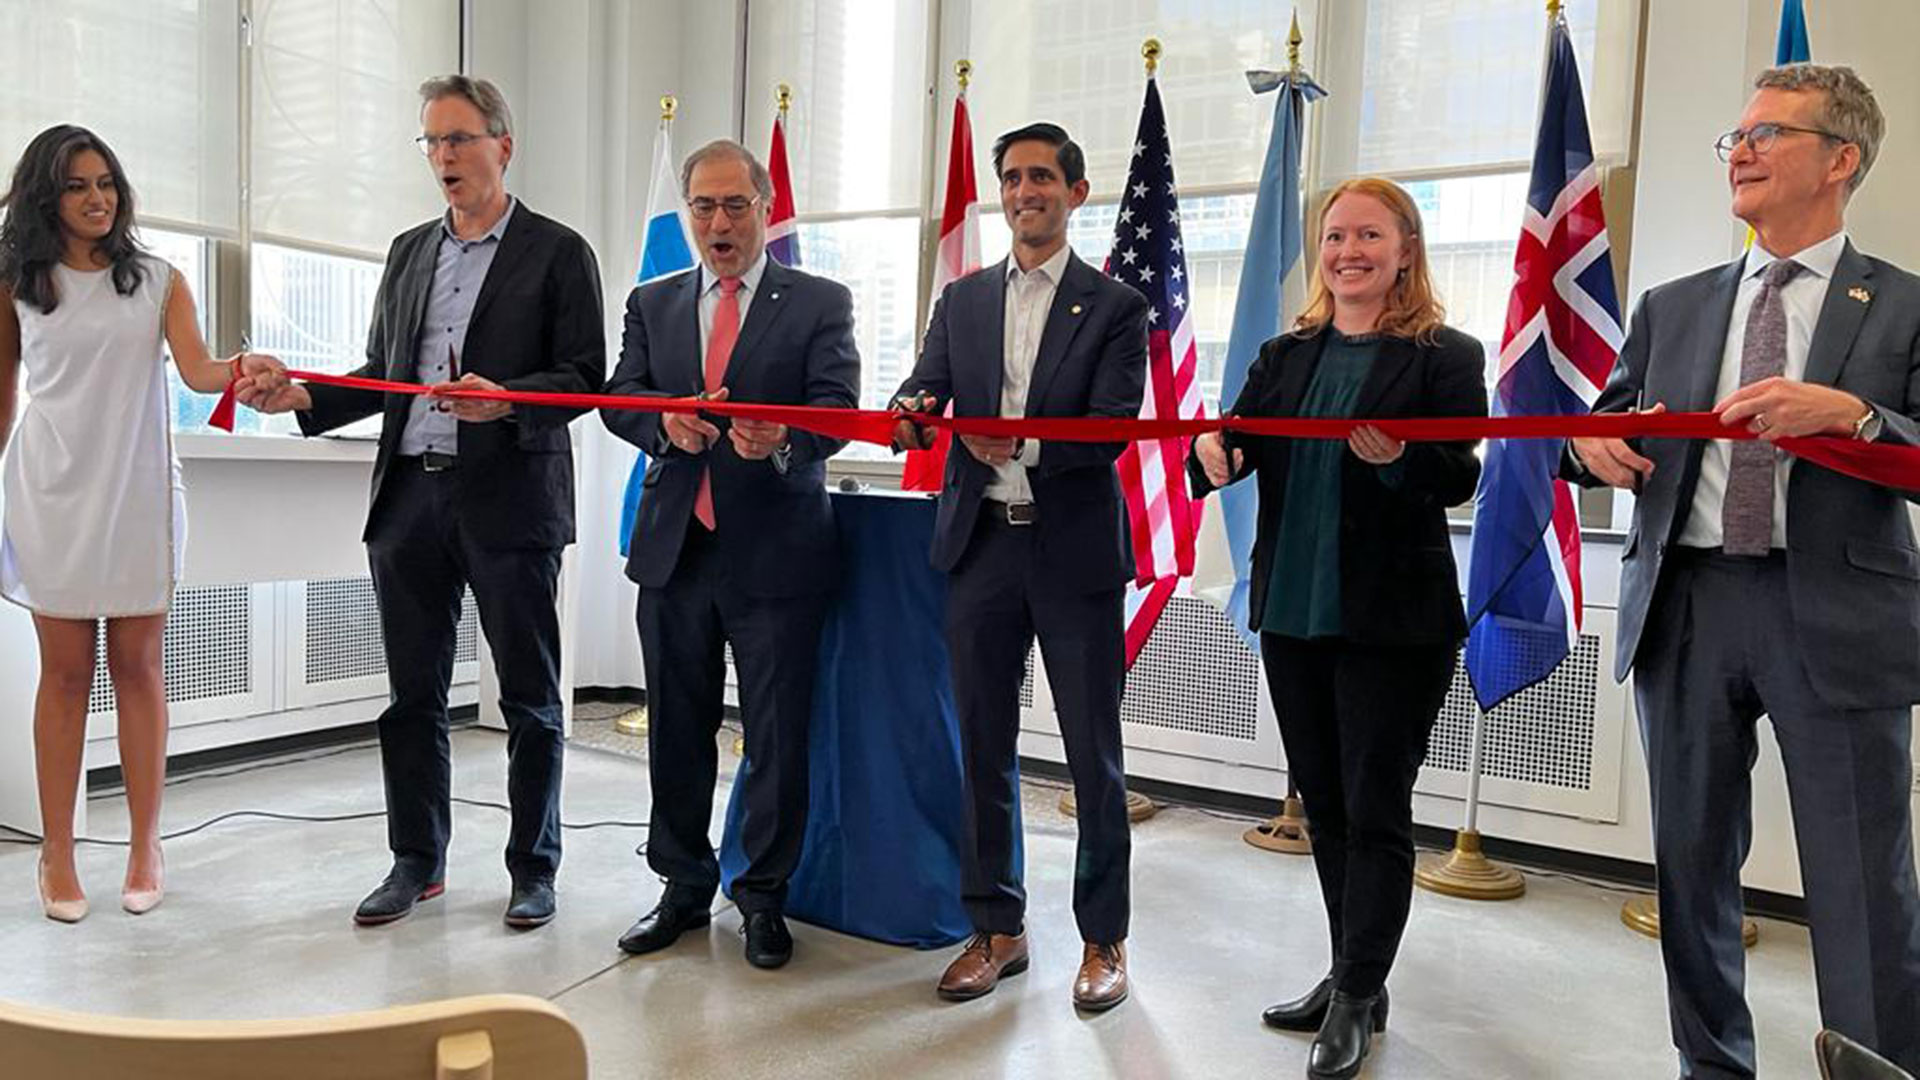 Argentine Connection: el Embajador Argüello inauguró un local en Chicago para promover productos argentinos